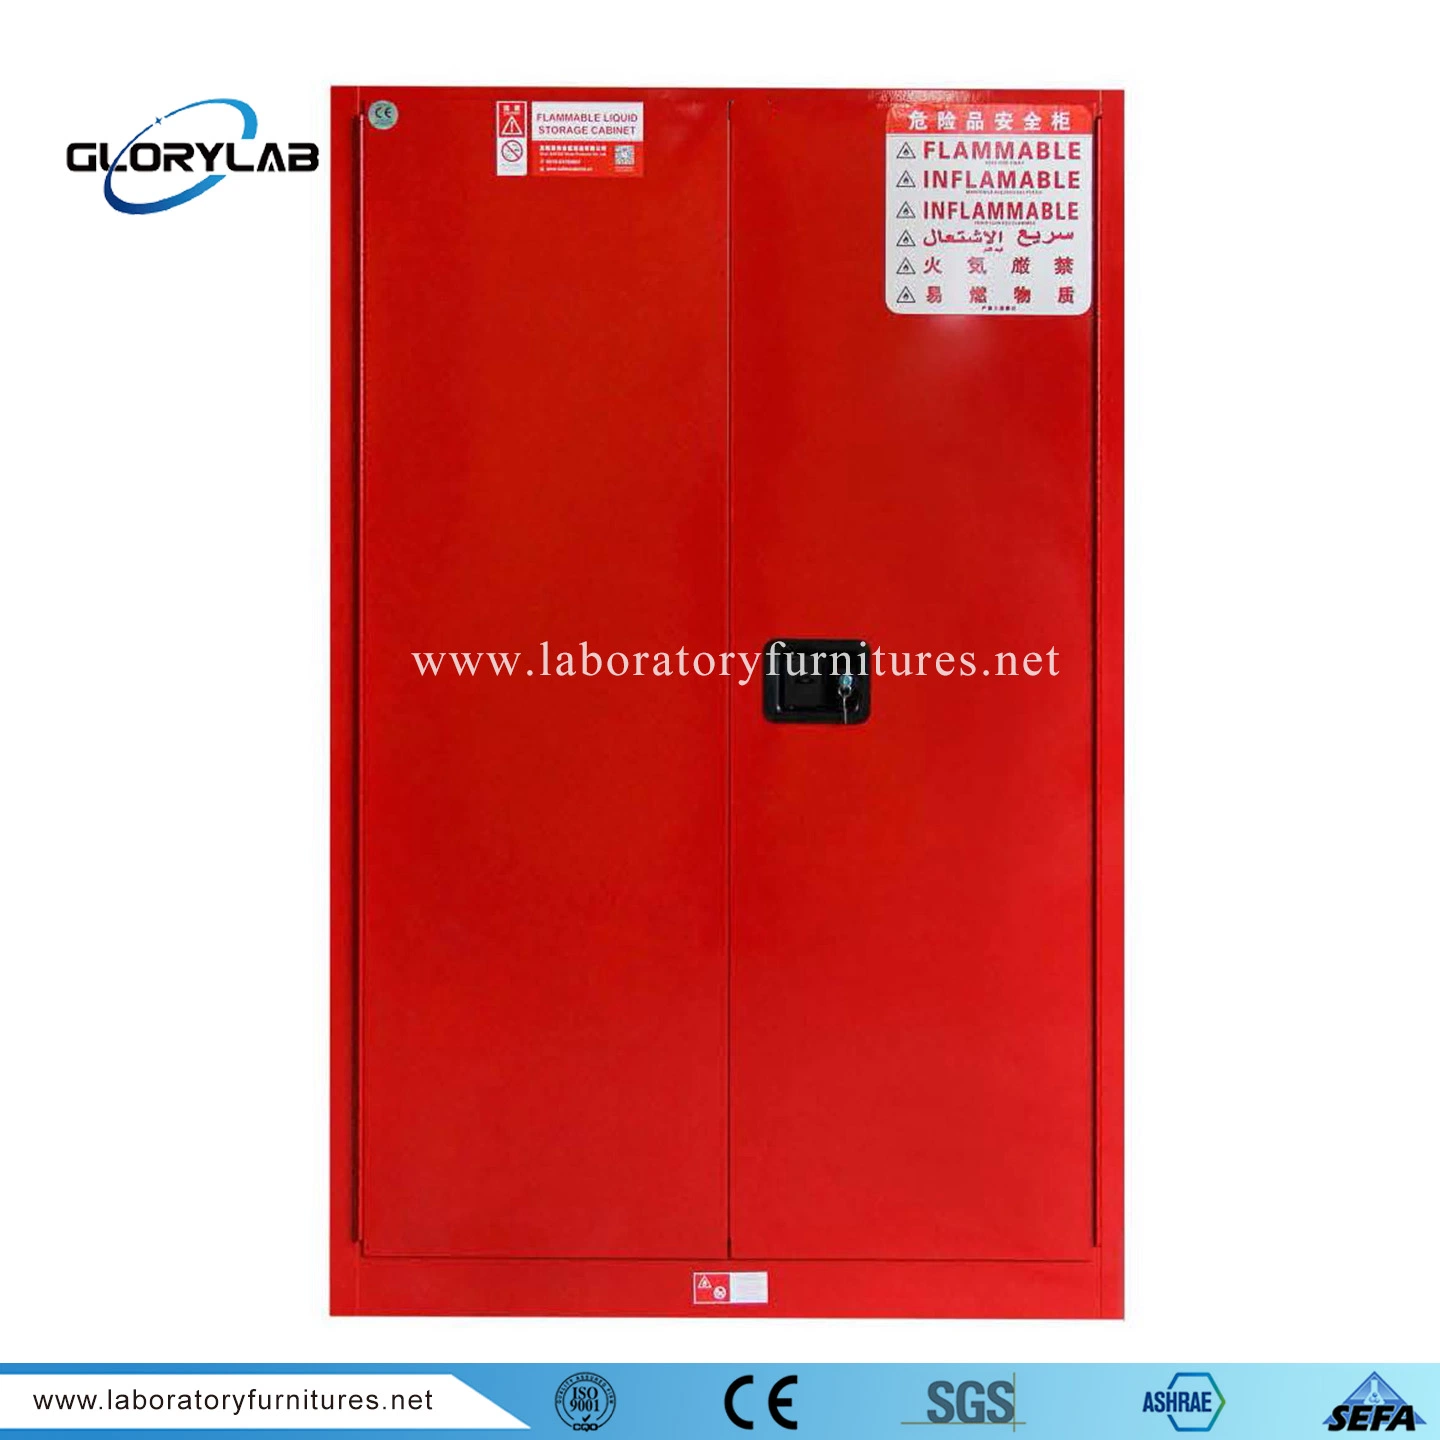 En acier inoxydable de laboratoire industriel Fire Cabinet ignifuge armoire de sécurité inflammables (JH9000R)